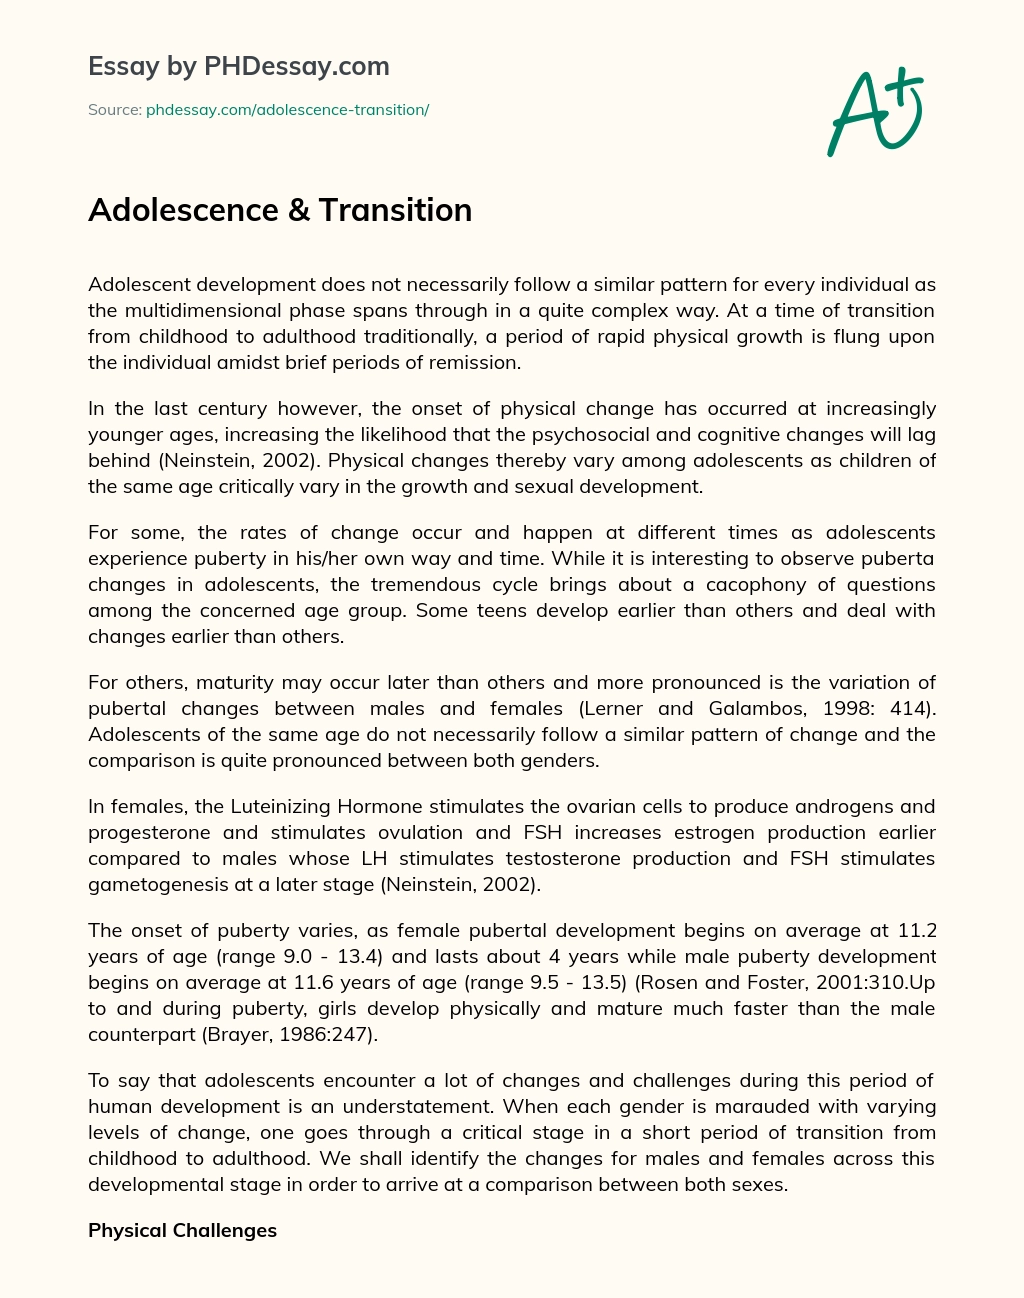 Adolescence & Transition essay